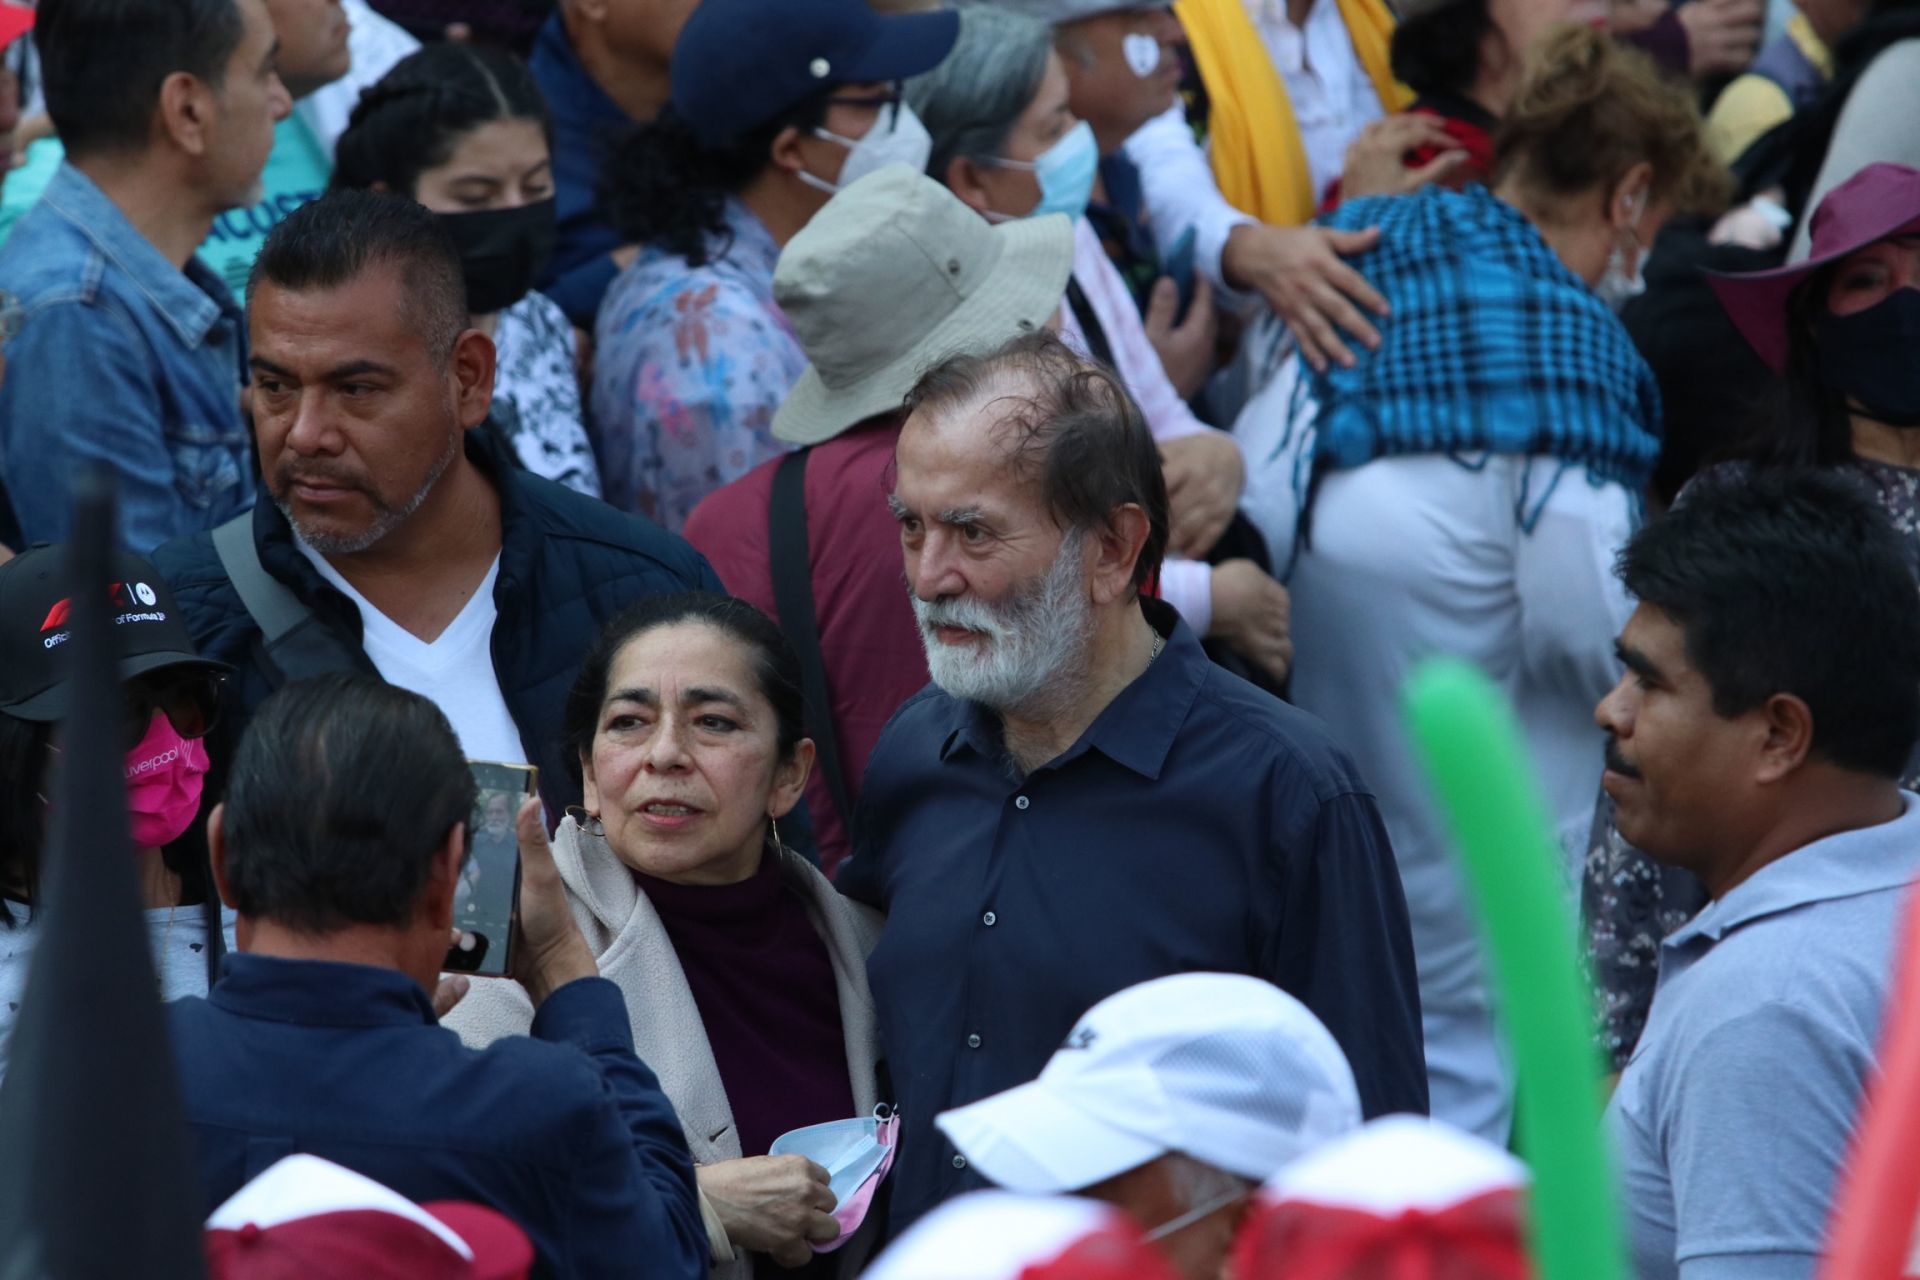 CIUDAD DE MÉXICO, 27NOVIEMBRE2022.- Andrés Manuel López Obrador, presidente de México encabeza marcha hacía el Zócalo donde dará un mensaje a la población.
FOTO: ANDREA MURCIA/CUARTSOCURO